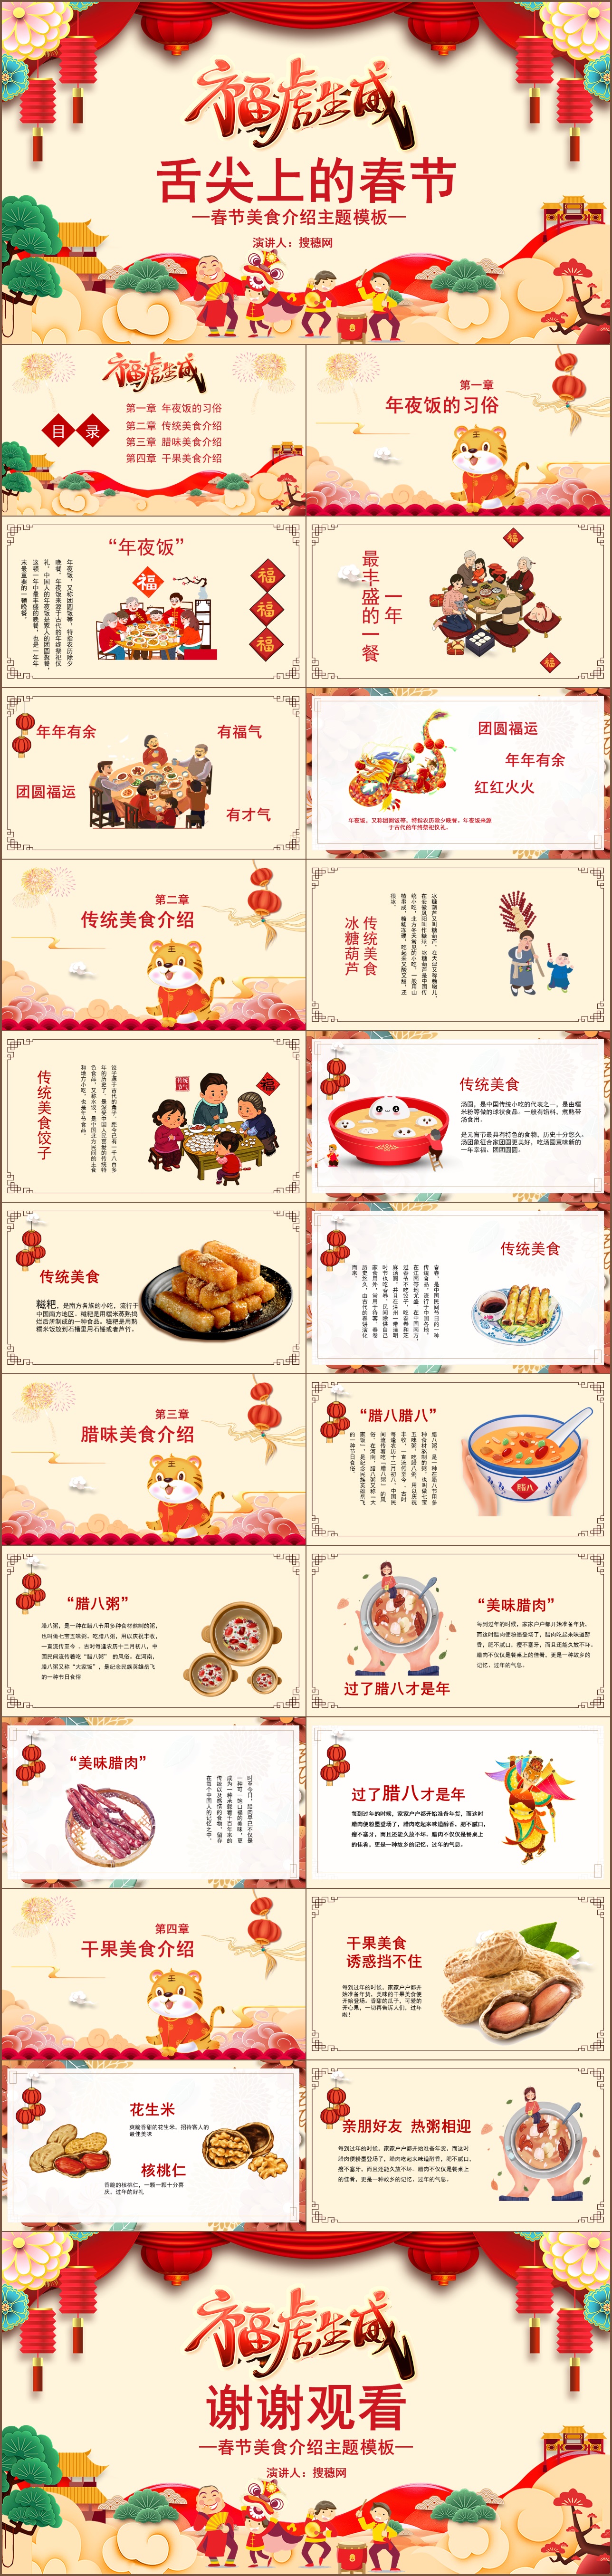 关于中国饮食文化的美文(中国饮食文化ppt)
